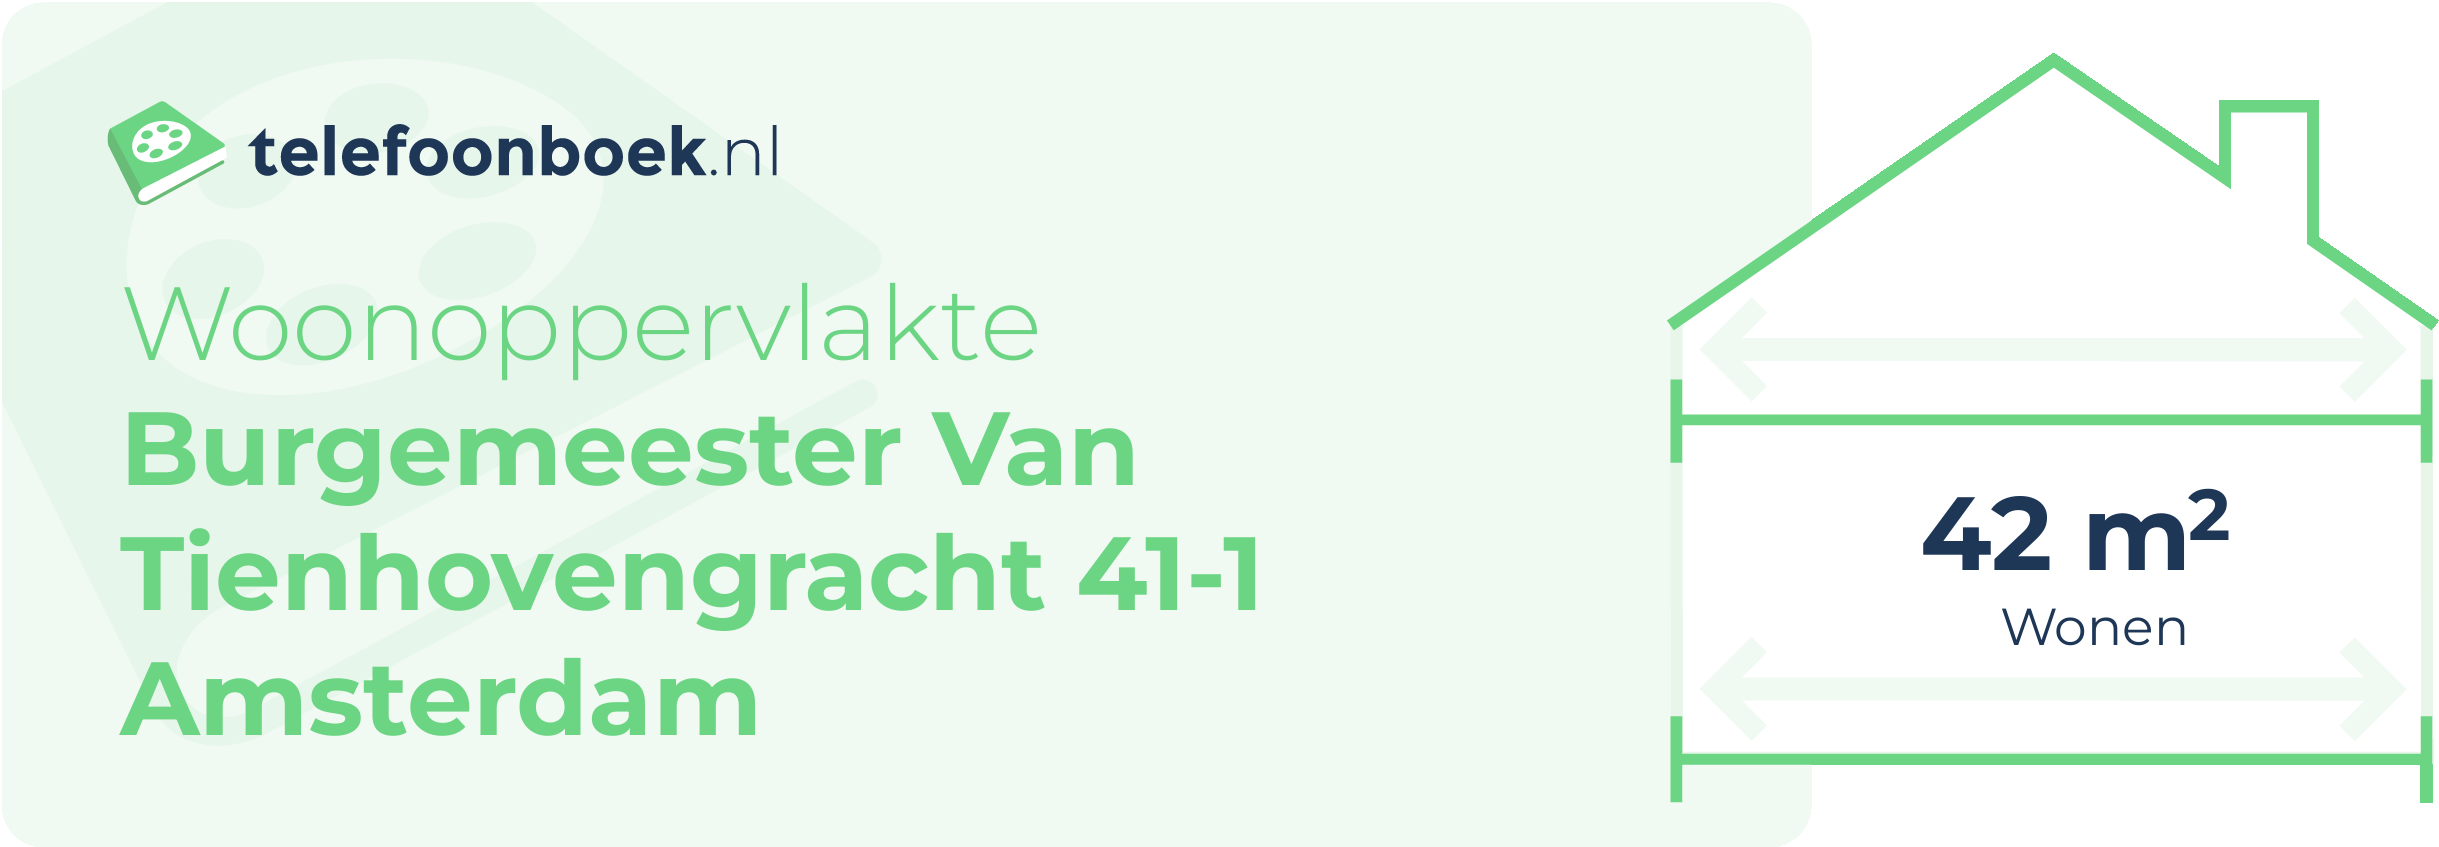 Woonoppervlakte Burgemeester Van Tienhovengracht 41-1 Amsterdam